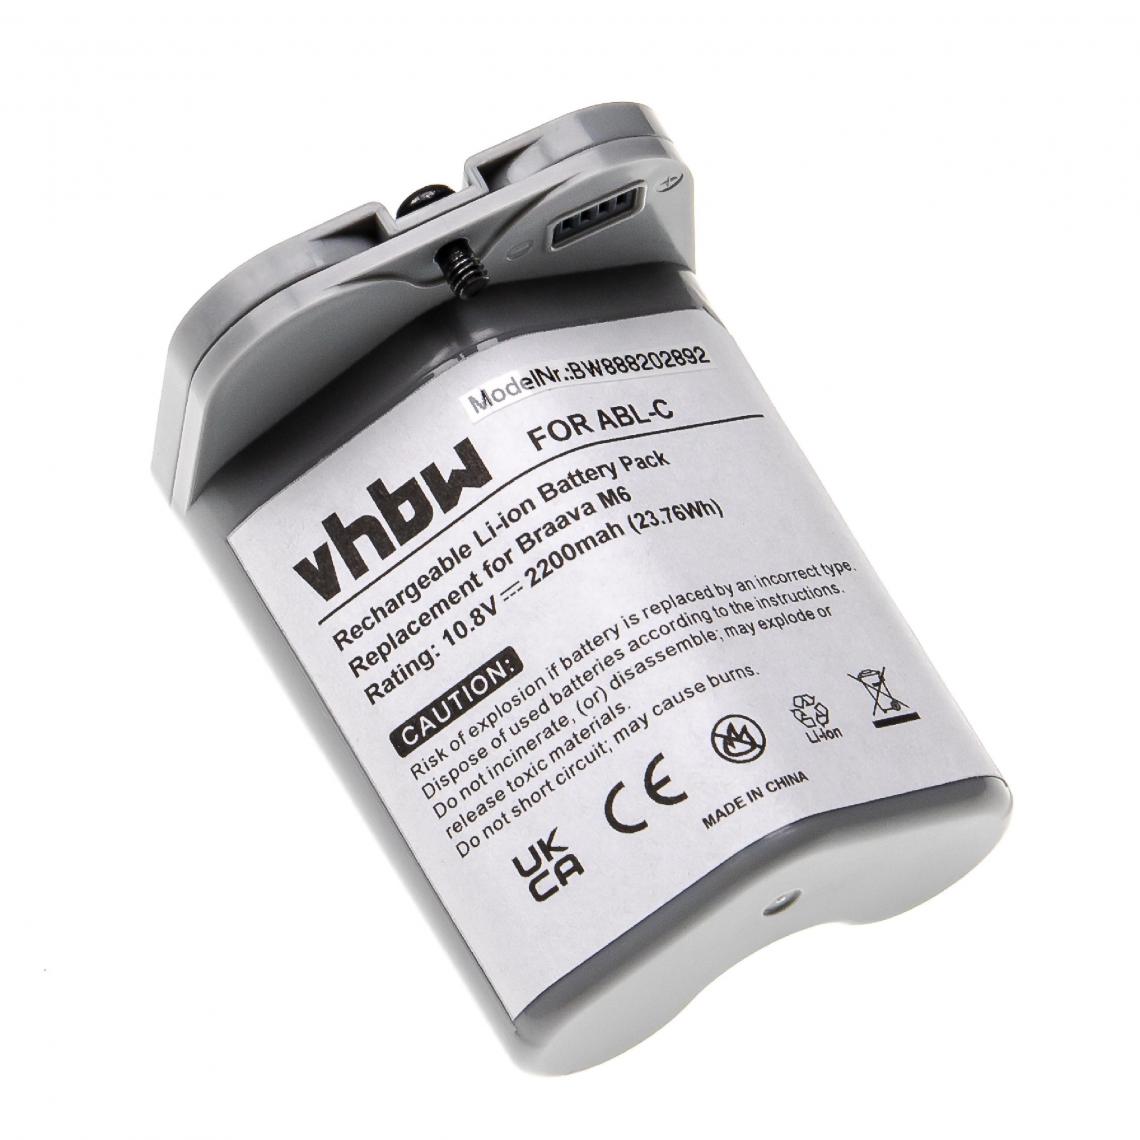 Vhbw - vhbw Batterie remplacement pour iRobot ALB-C, M611020 pour aspirateur, robot électroménager (2200mAh, 10,8V, Li-ion) - Accessoire entretien des sols